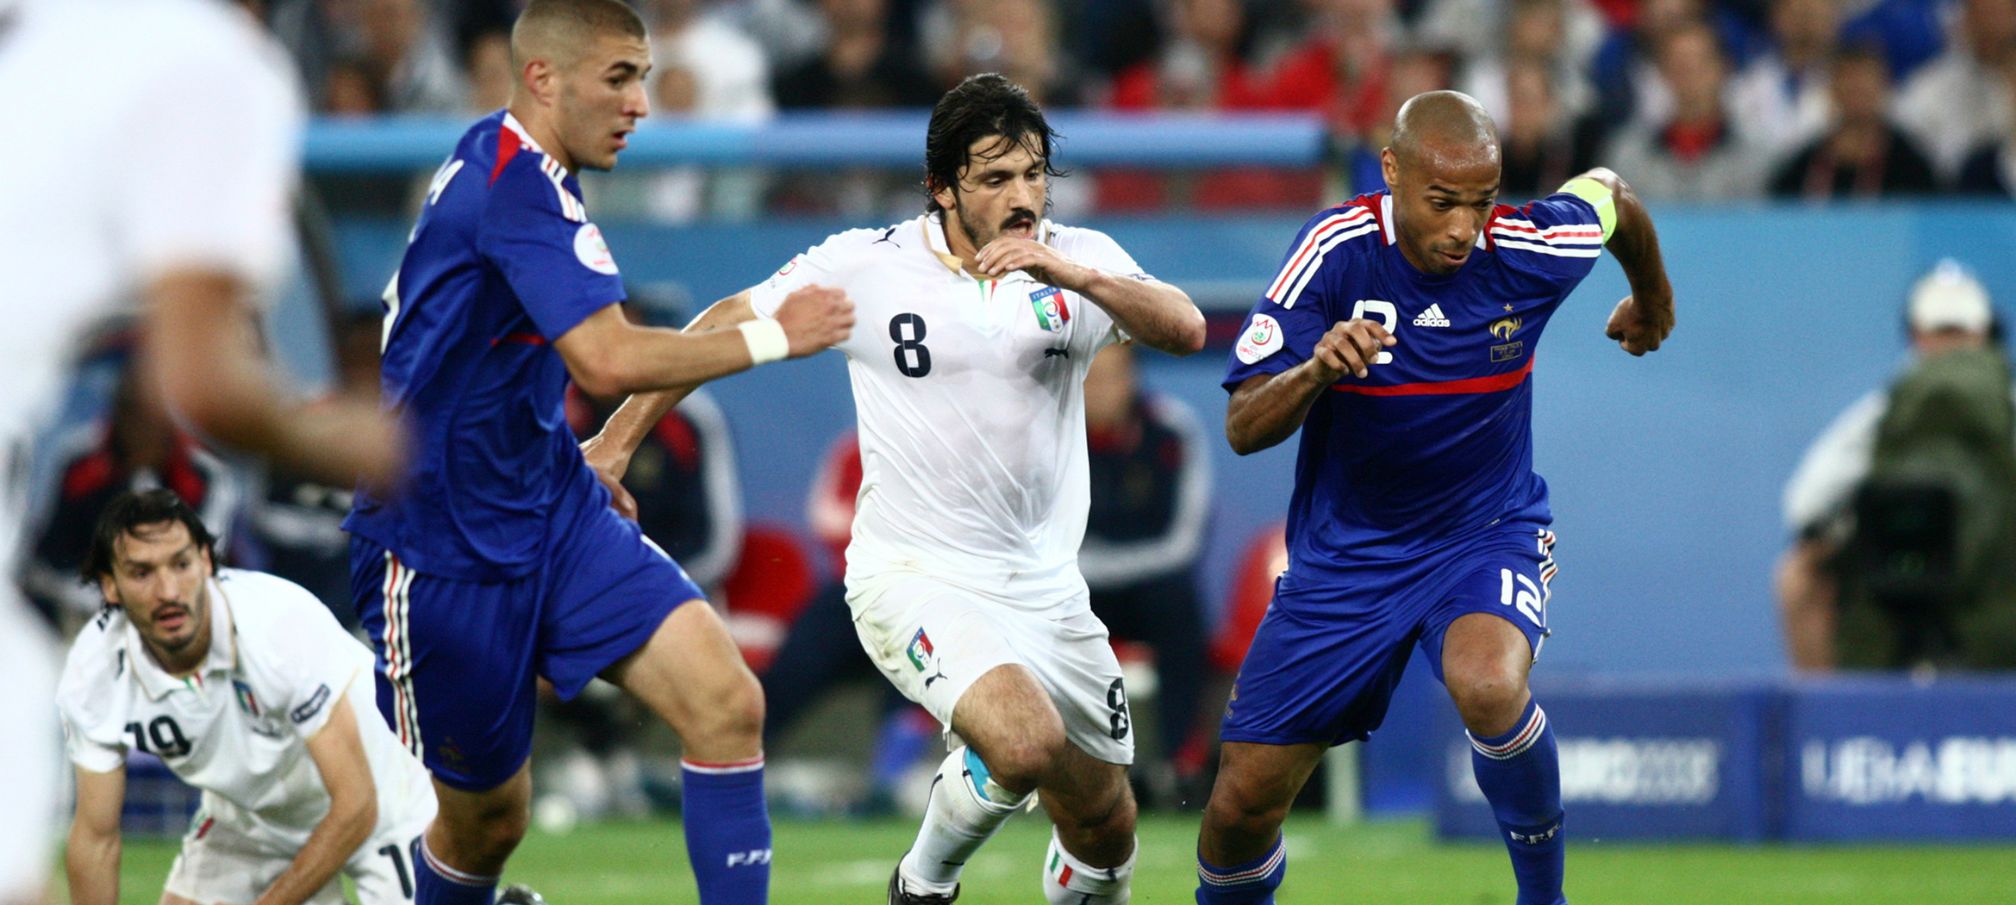 Euro 2008 Italy France Gattuso Henry